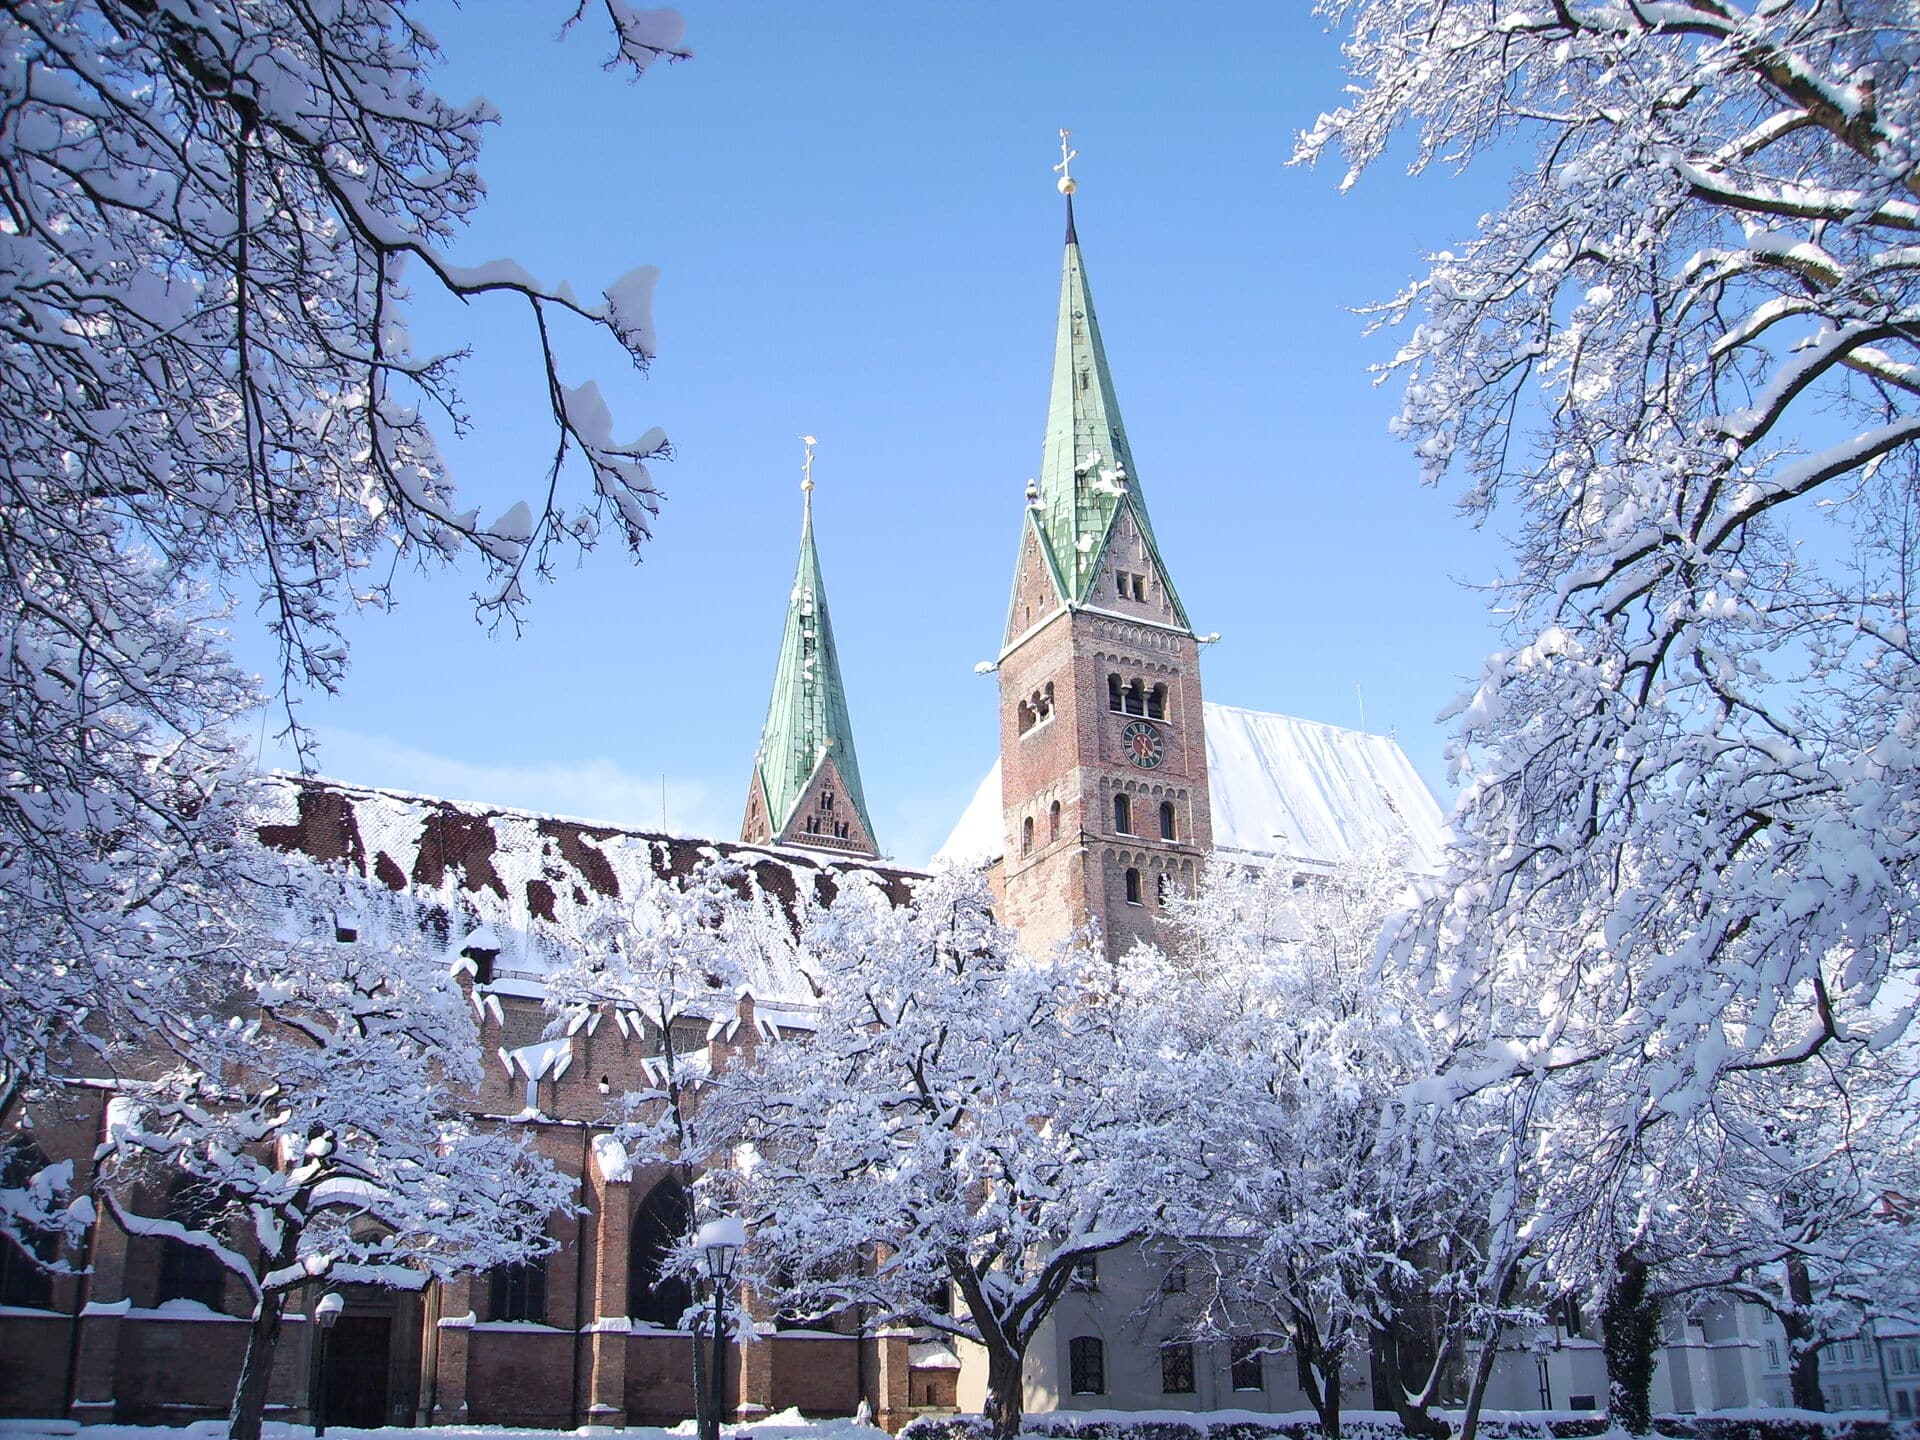 Dom Augsburg im Winter - schlechtes Wetter in Augsburg